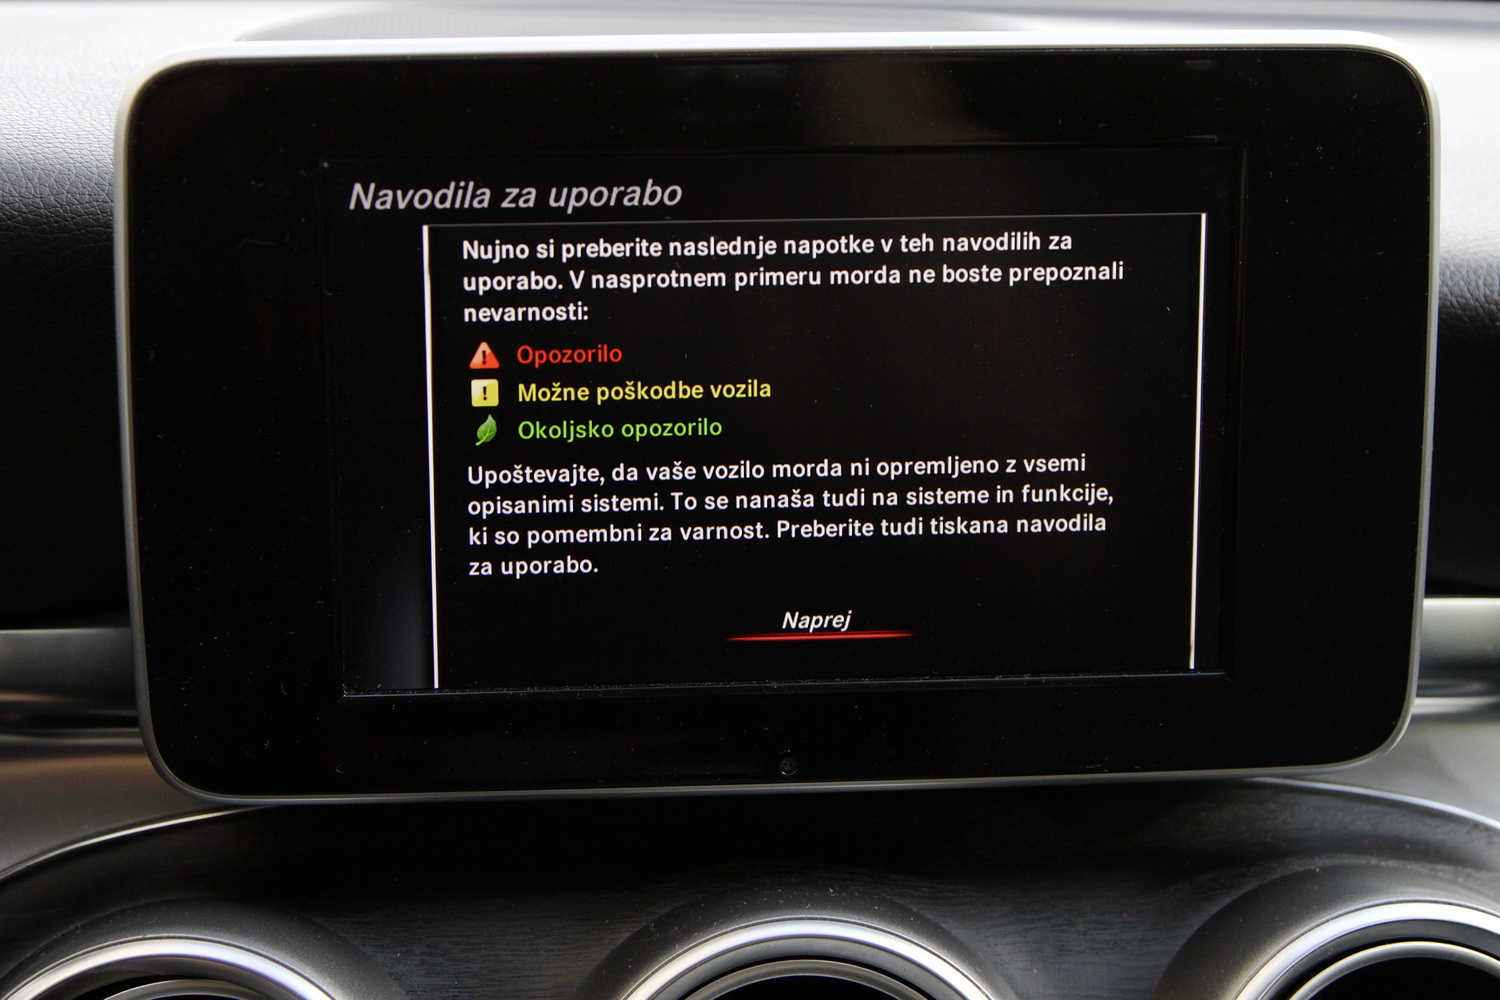 Mercedes-Benz C-razred 220d limuzina - osrednji zaslon - navodila za uporabo v slovenščini